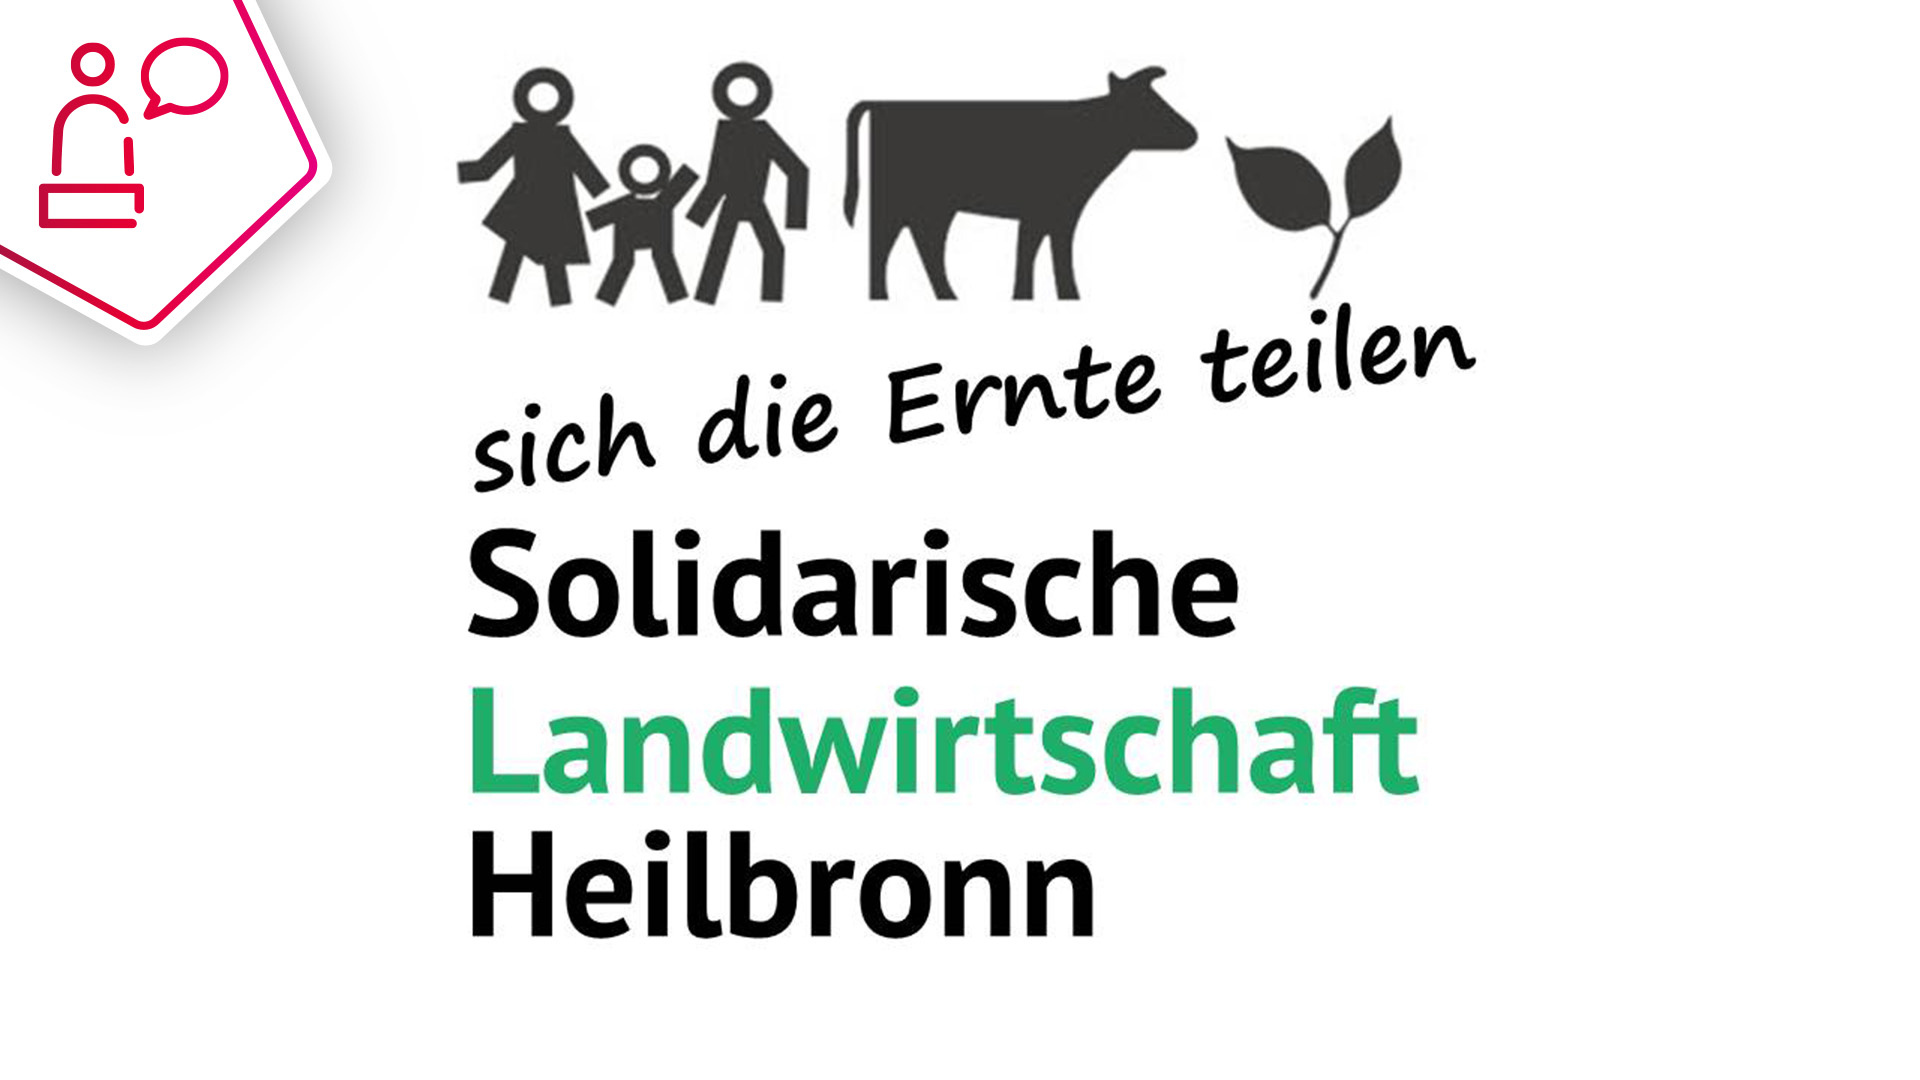 Solidarische Landwirtschaft - eine weltweite Bewegung